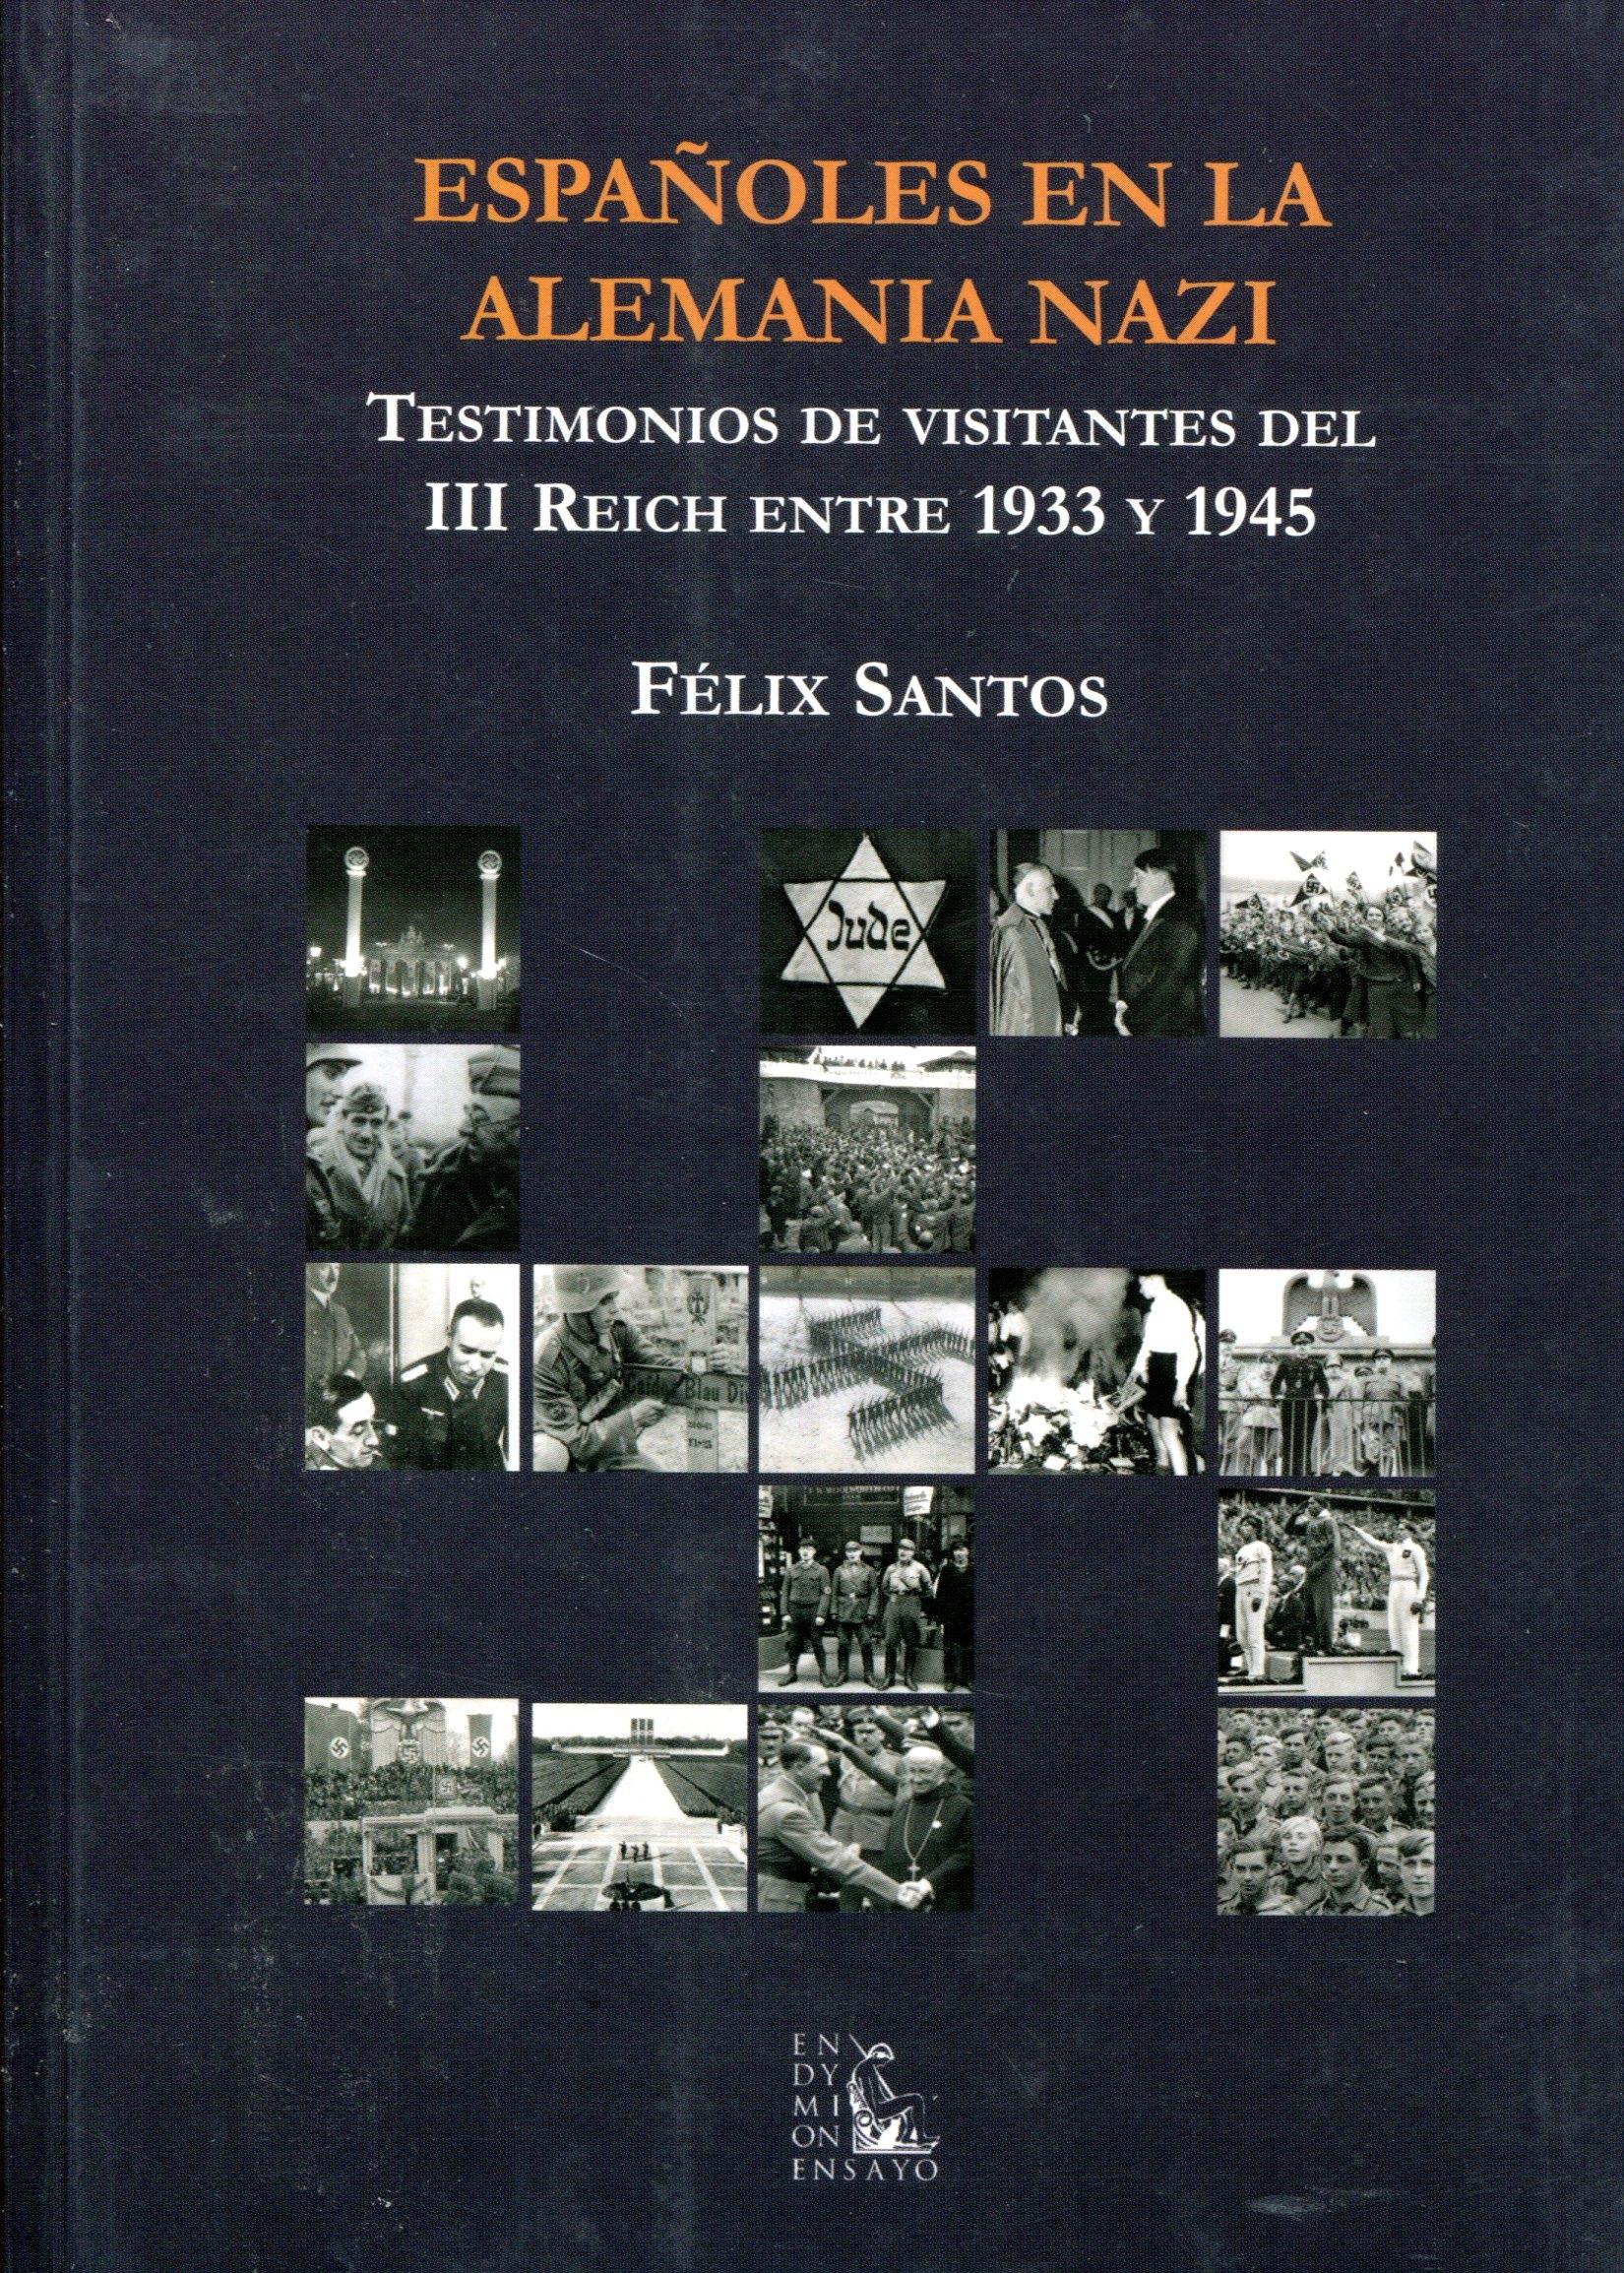 Españoles en la Alemania nazi "Testimonios de visitantes del III Reich entre 1933 y 1945". 